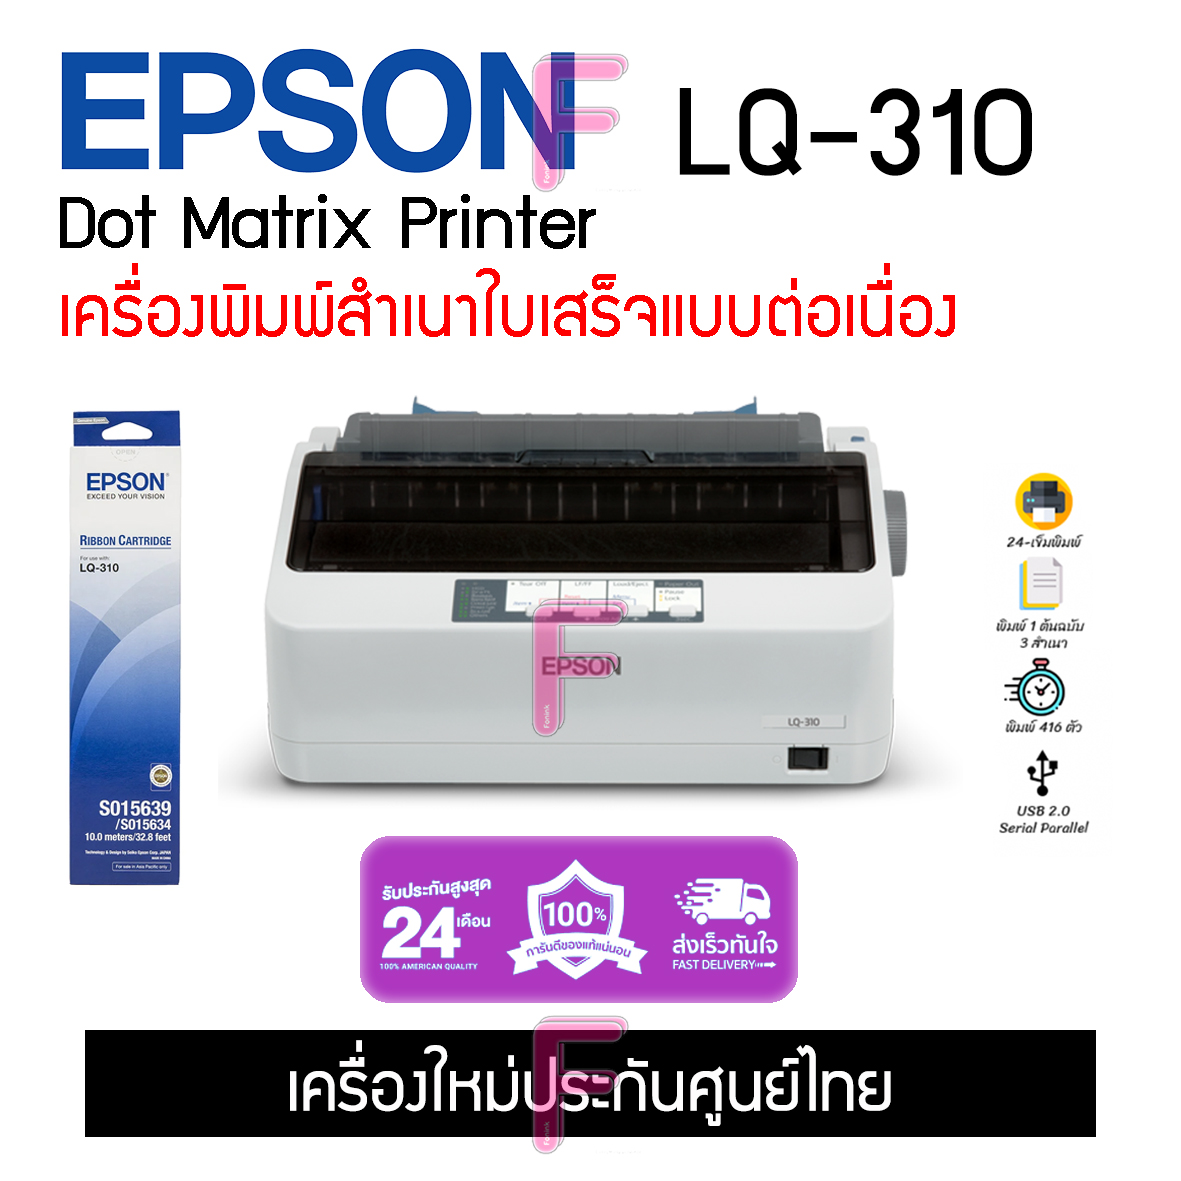 Lq 310 Epson Dot Matrix Printer เครื่องพิมพ์สำเนาเอกสารต่อเนื่อง Th 6891